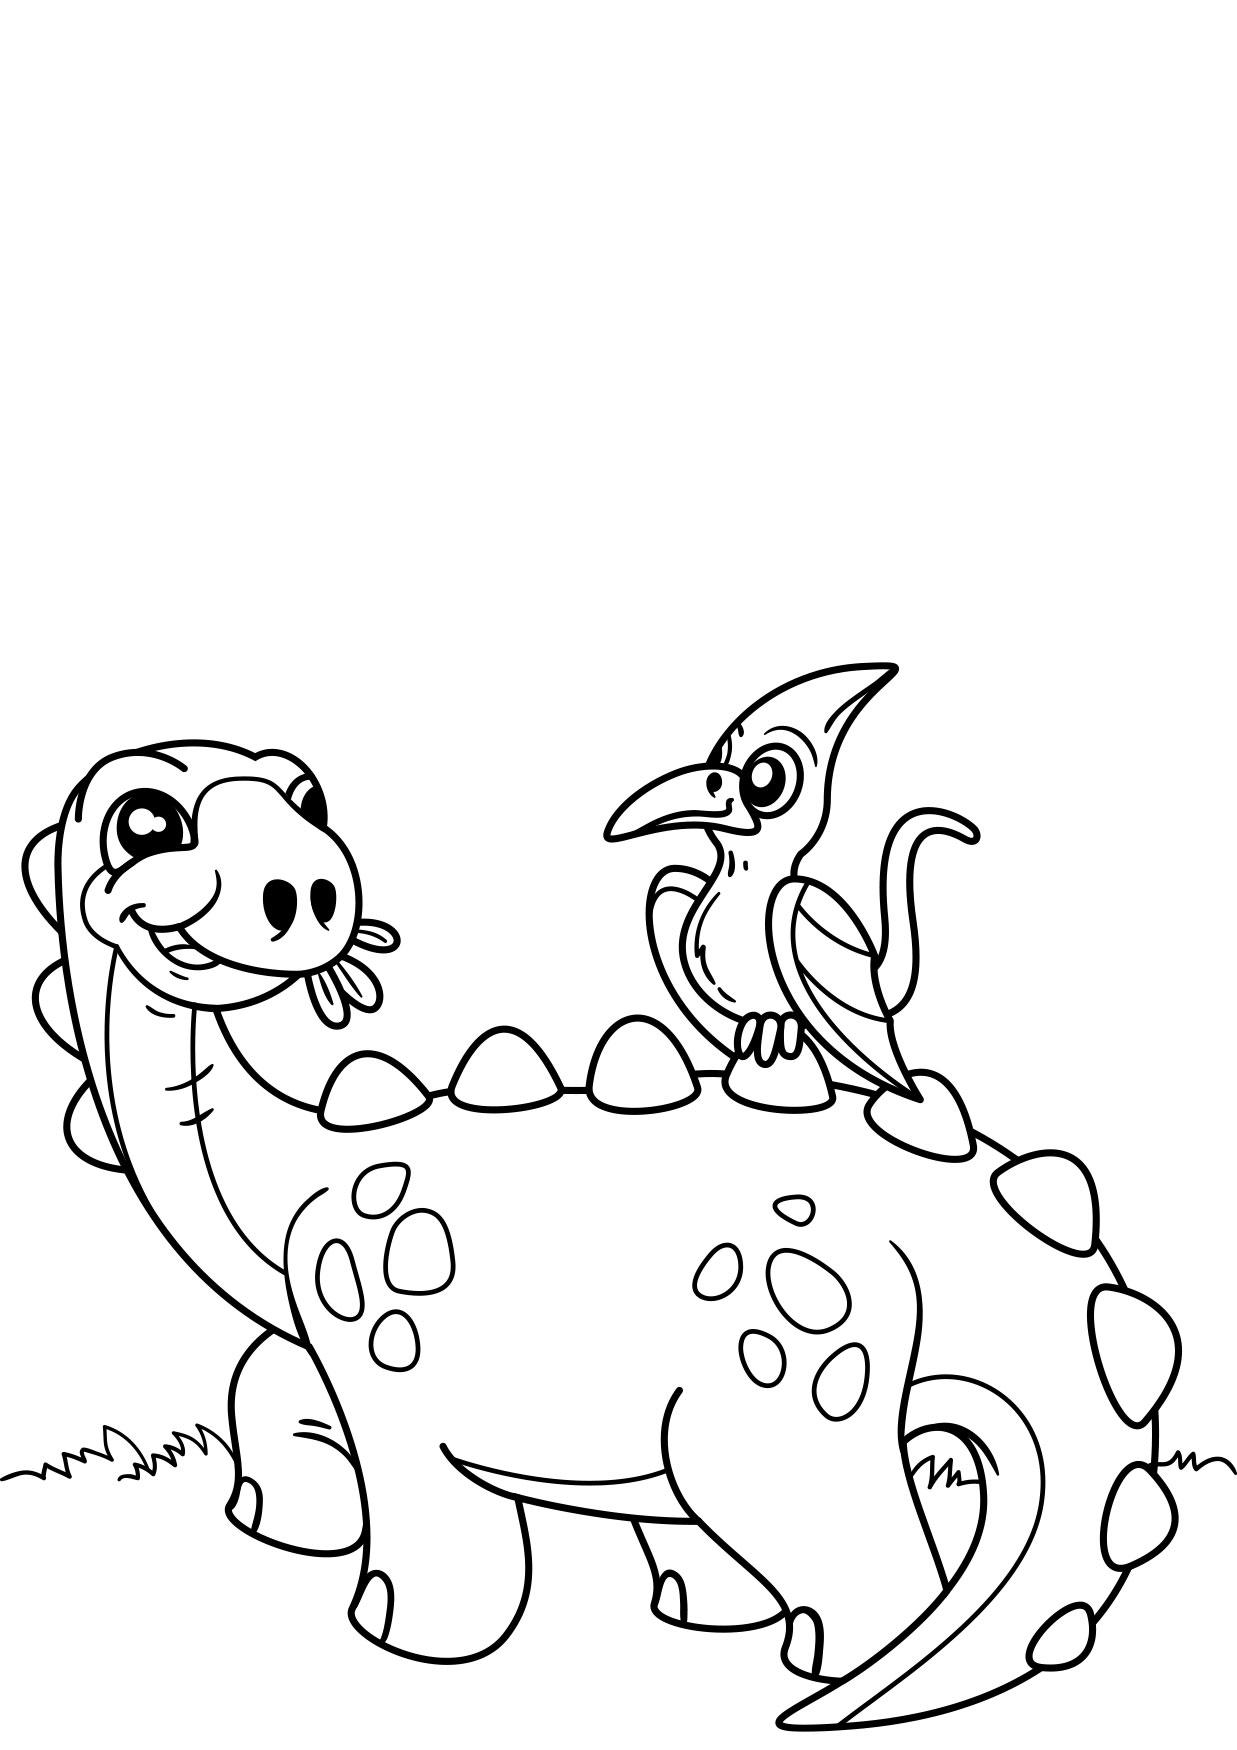 Página para colorir dinossauro com pÃ¡ssaro